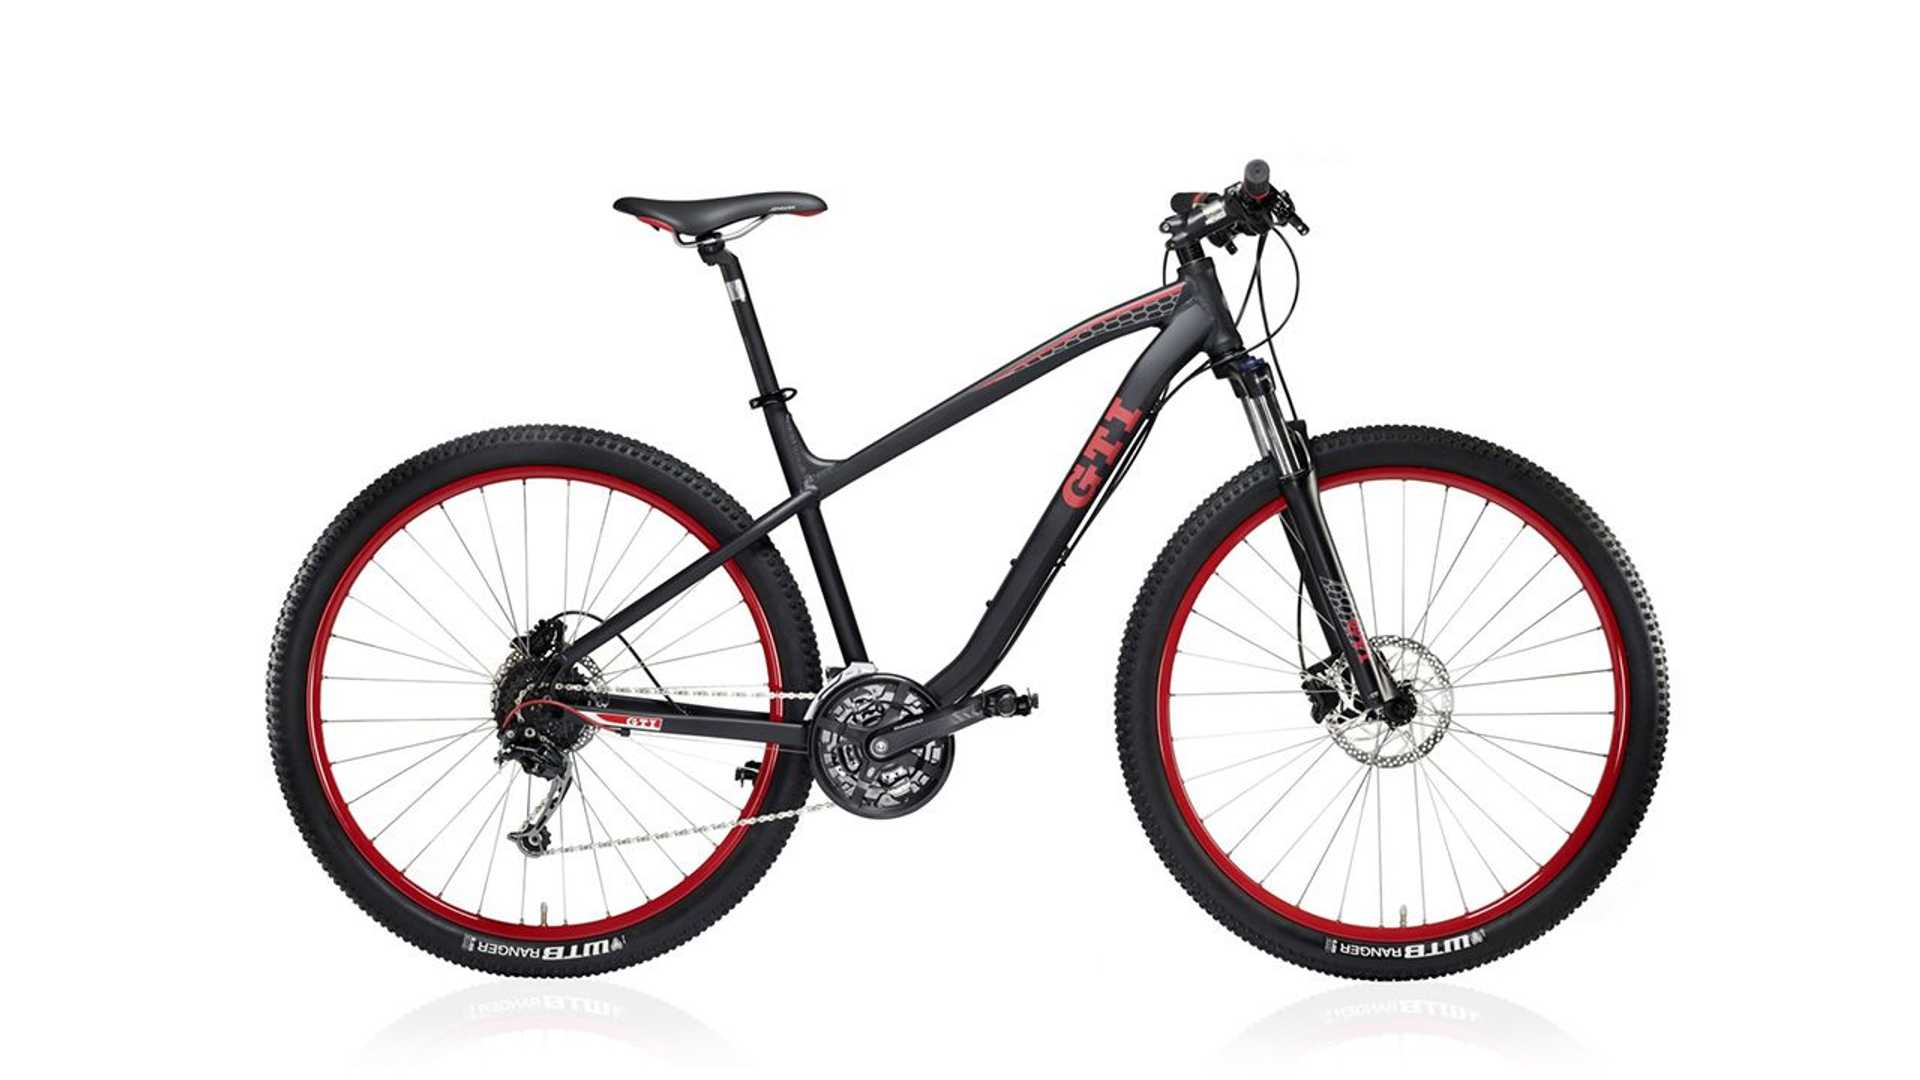 دوچرخه فولکس واگن GTI با قیمت 850 دلاری از راه رسید